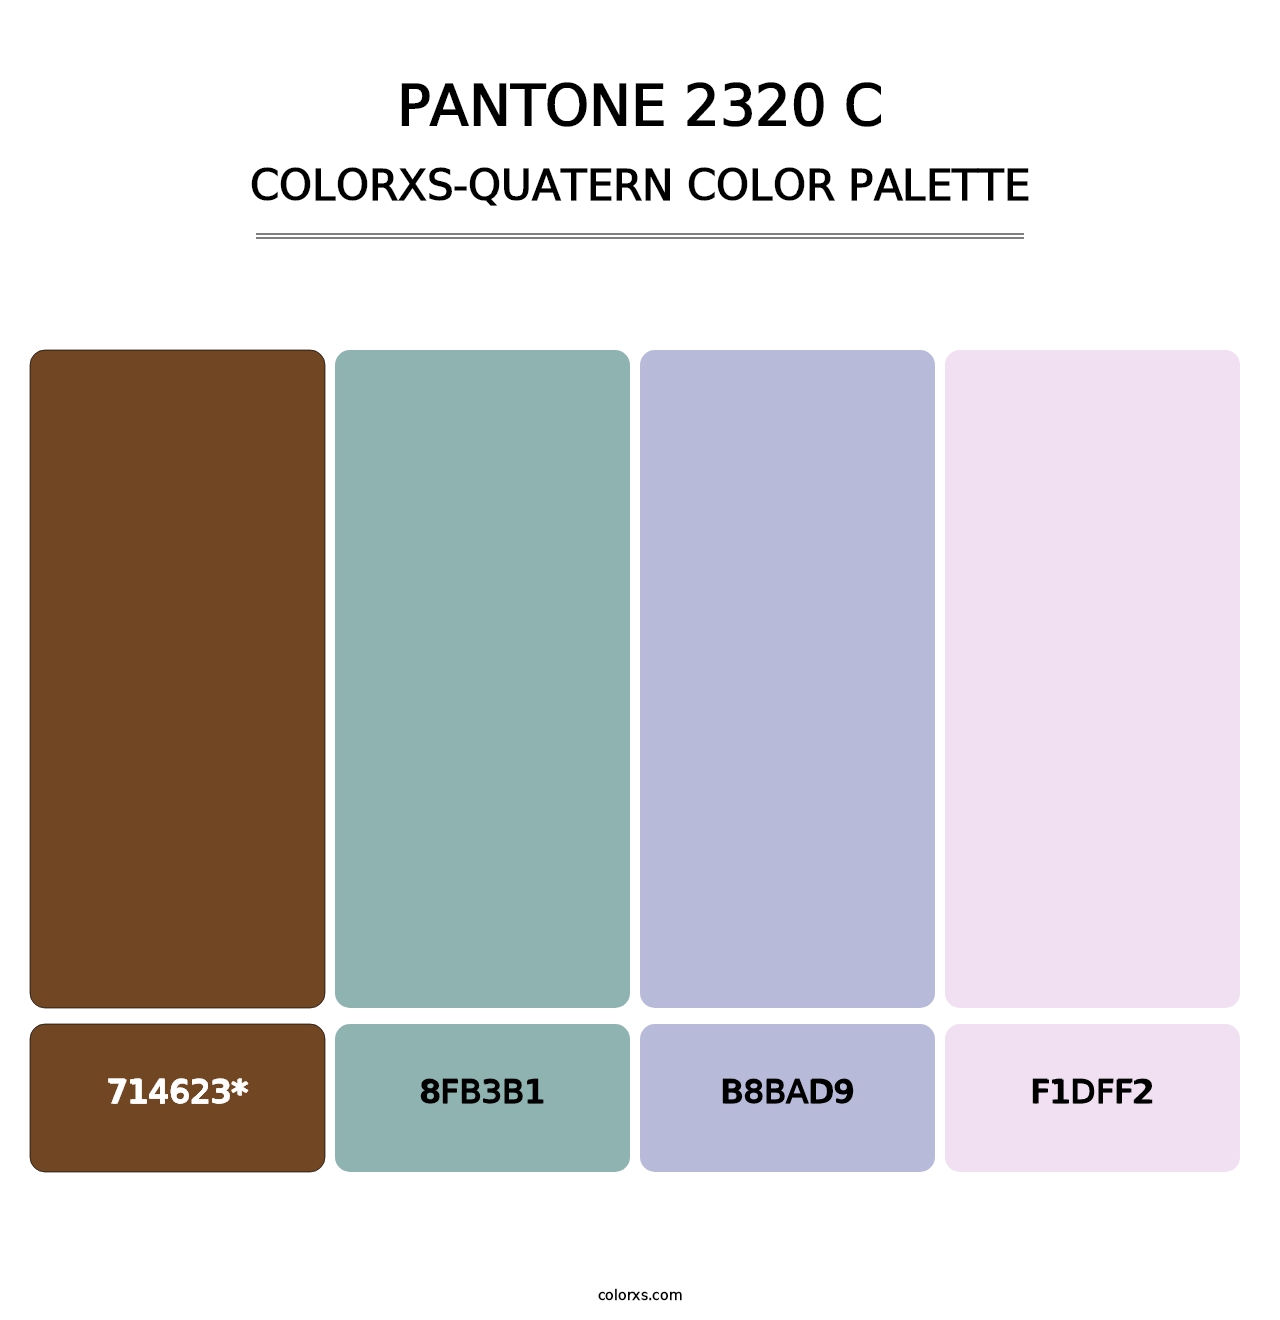 PANTONE 2320 C - Colorxs Quatern Palette